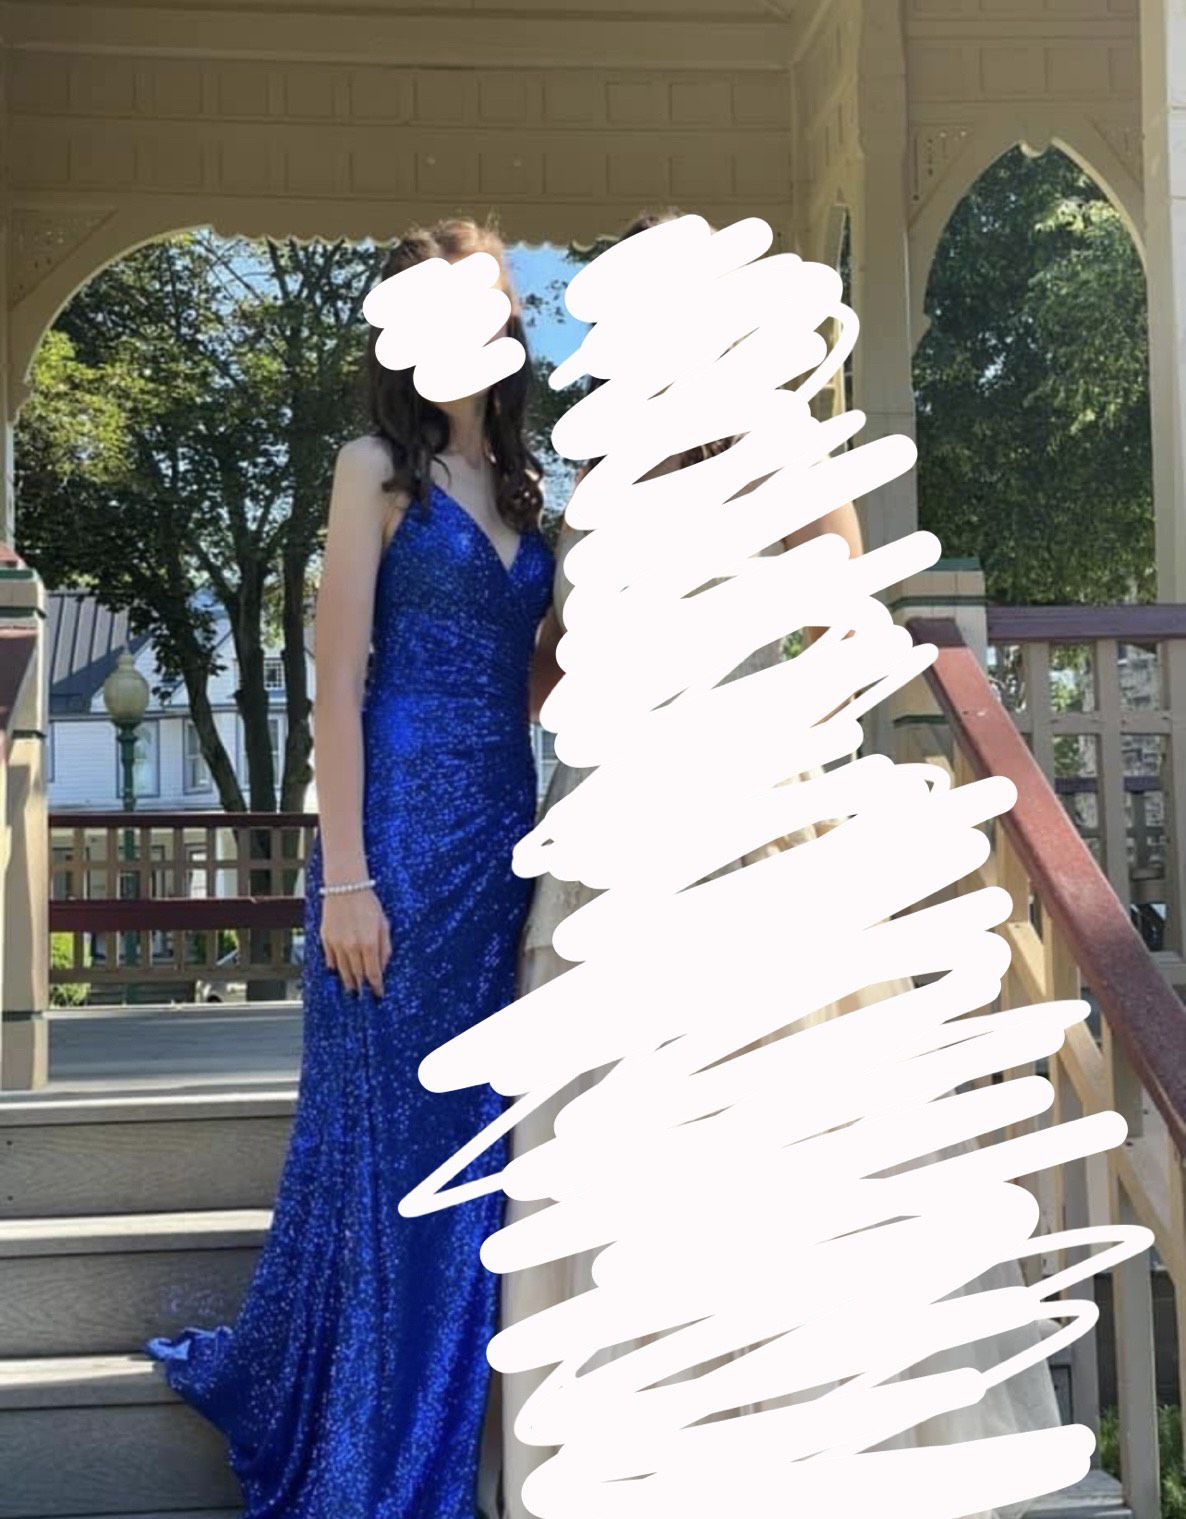 Size 0 Blue Side Slit Dress on Queenly